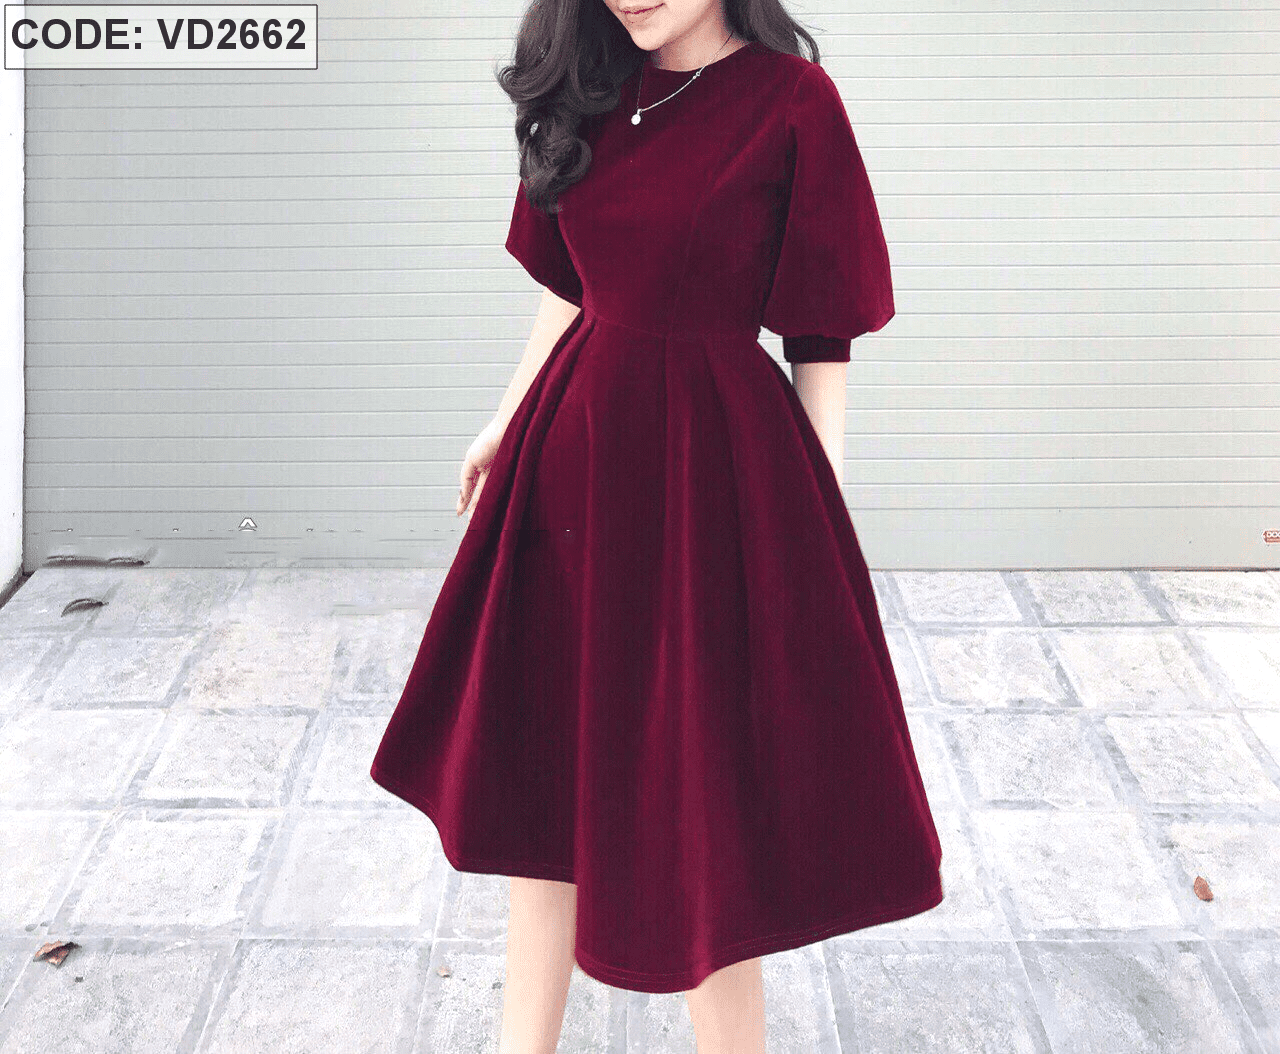 Đầm đỏ tay phồng xòe vải cotton mỹ hàng nhập - Quần Áo Xưởng May ANN